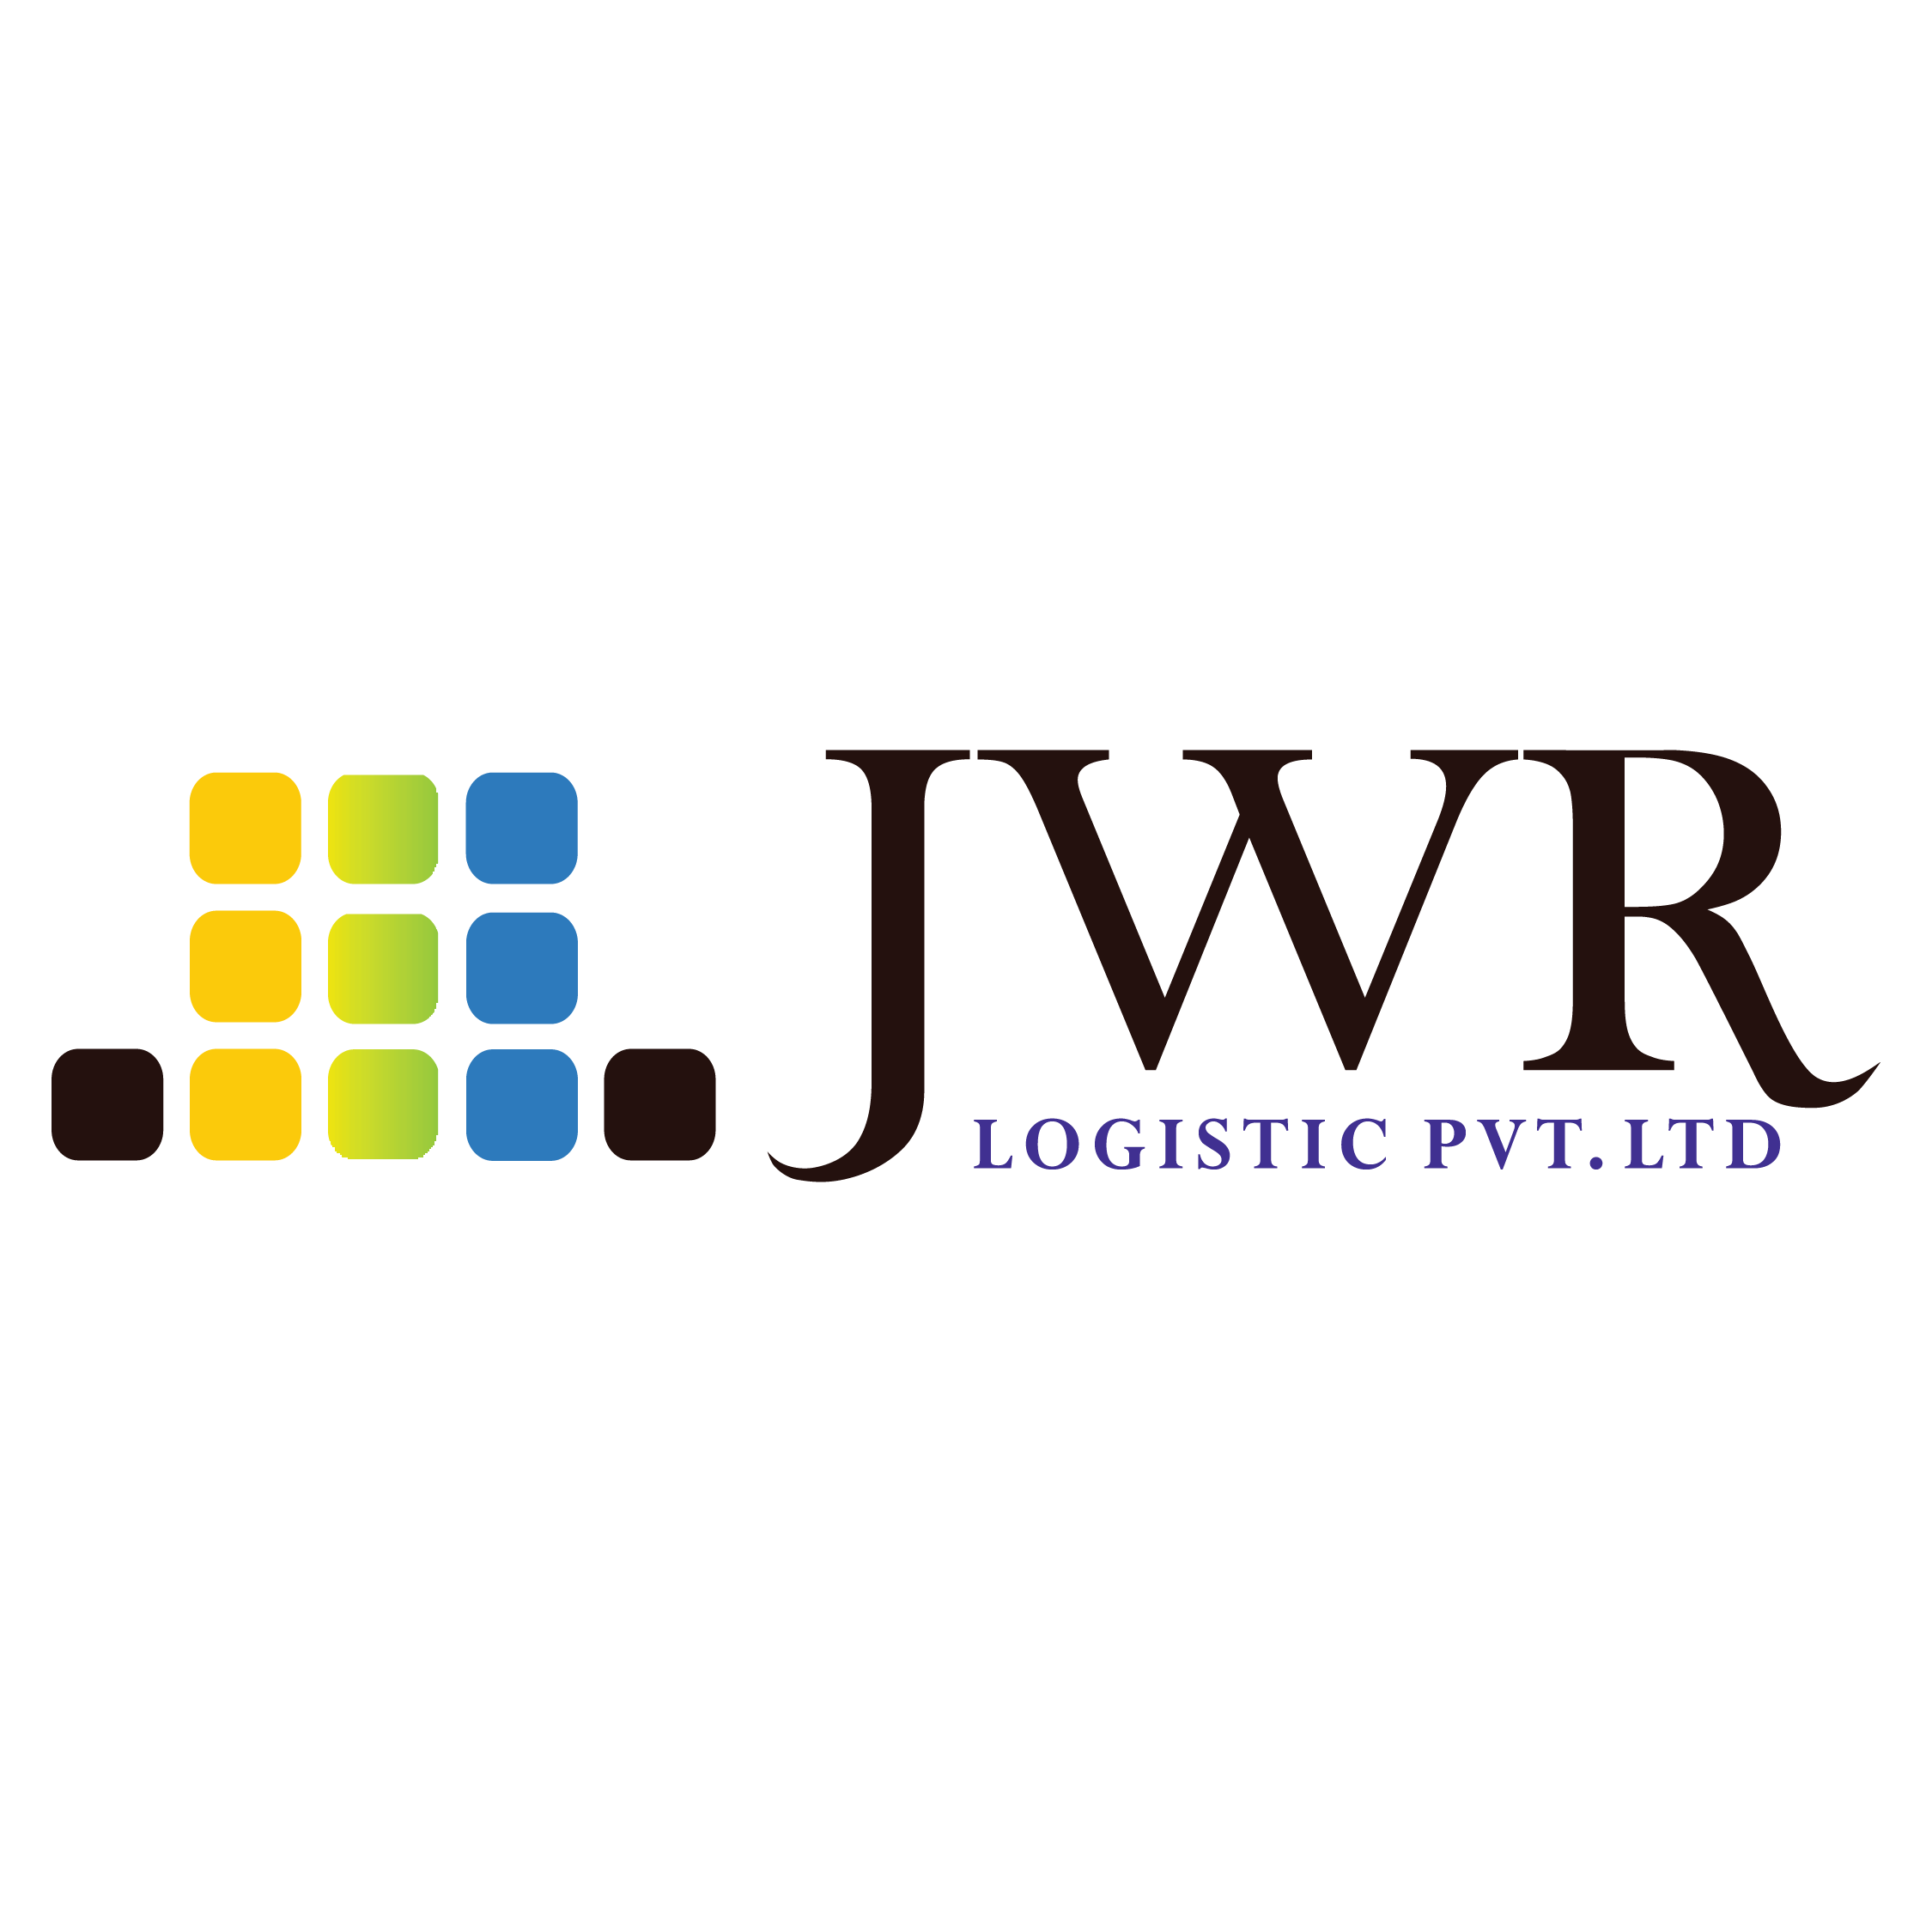 JWR LOGISTICS PVT. LTD.